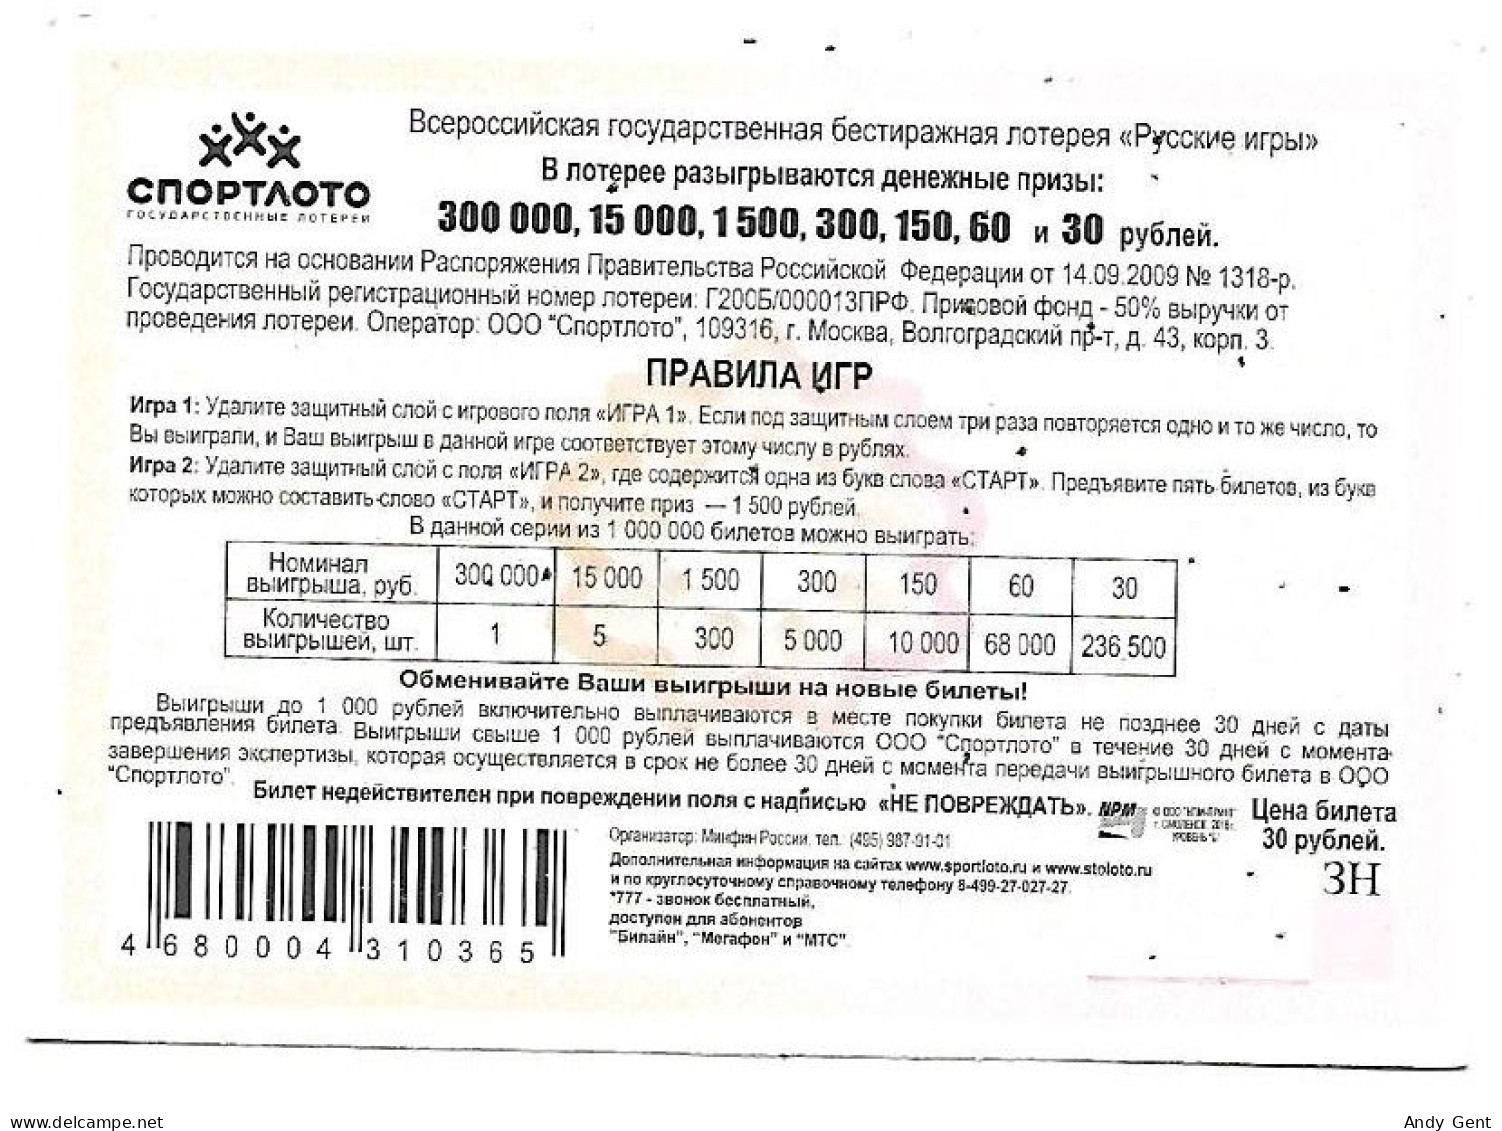 #5 Lottery Ticket / Scratch Russia Gorodki - Biglietti Della Lotteria